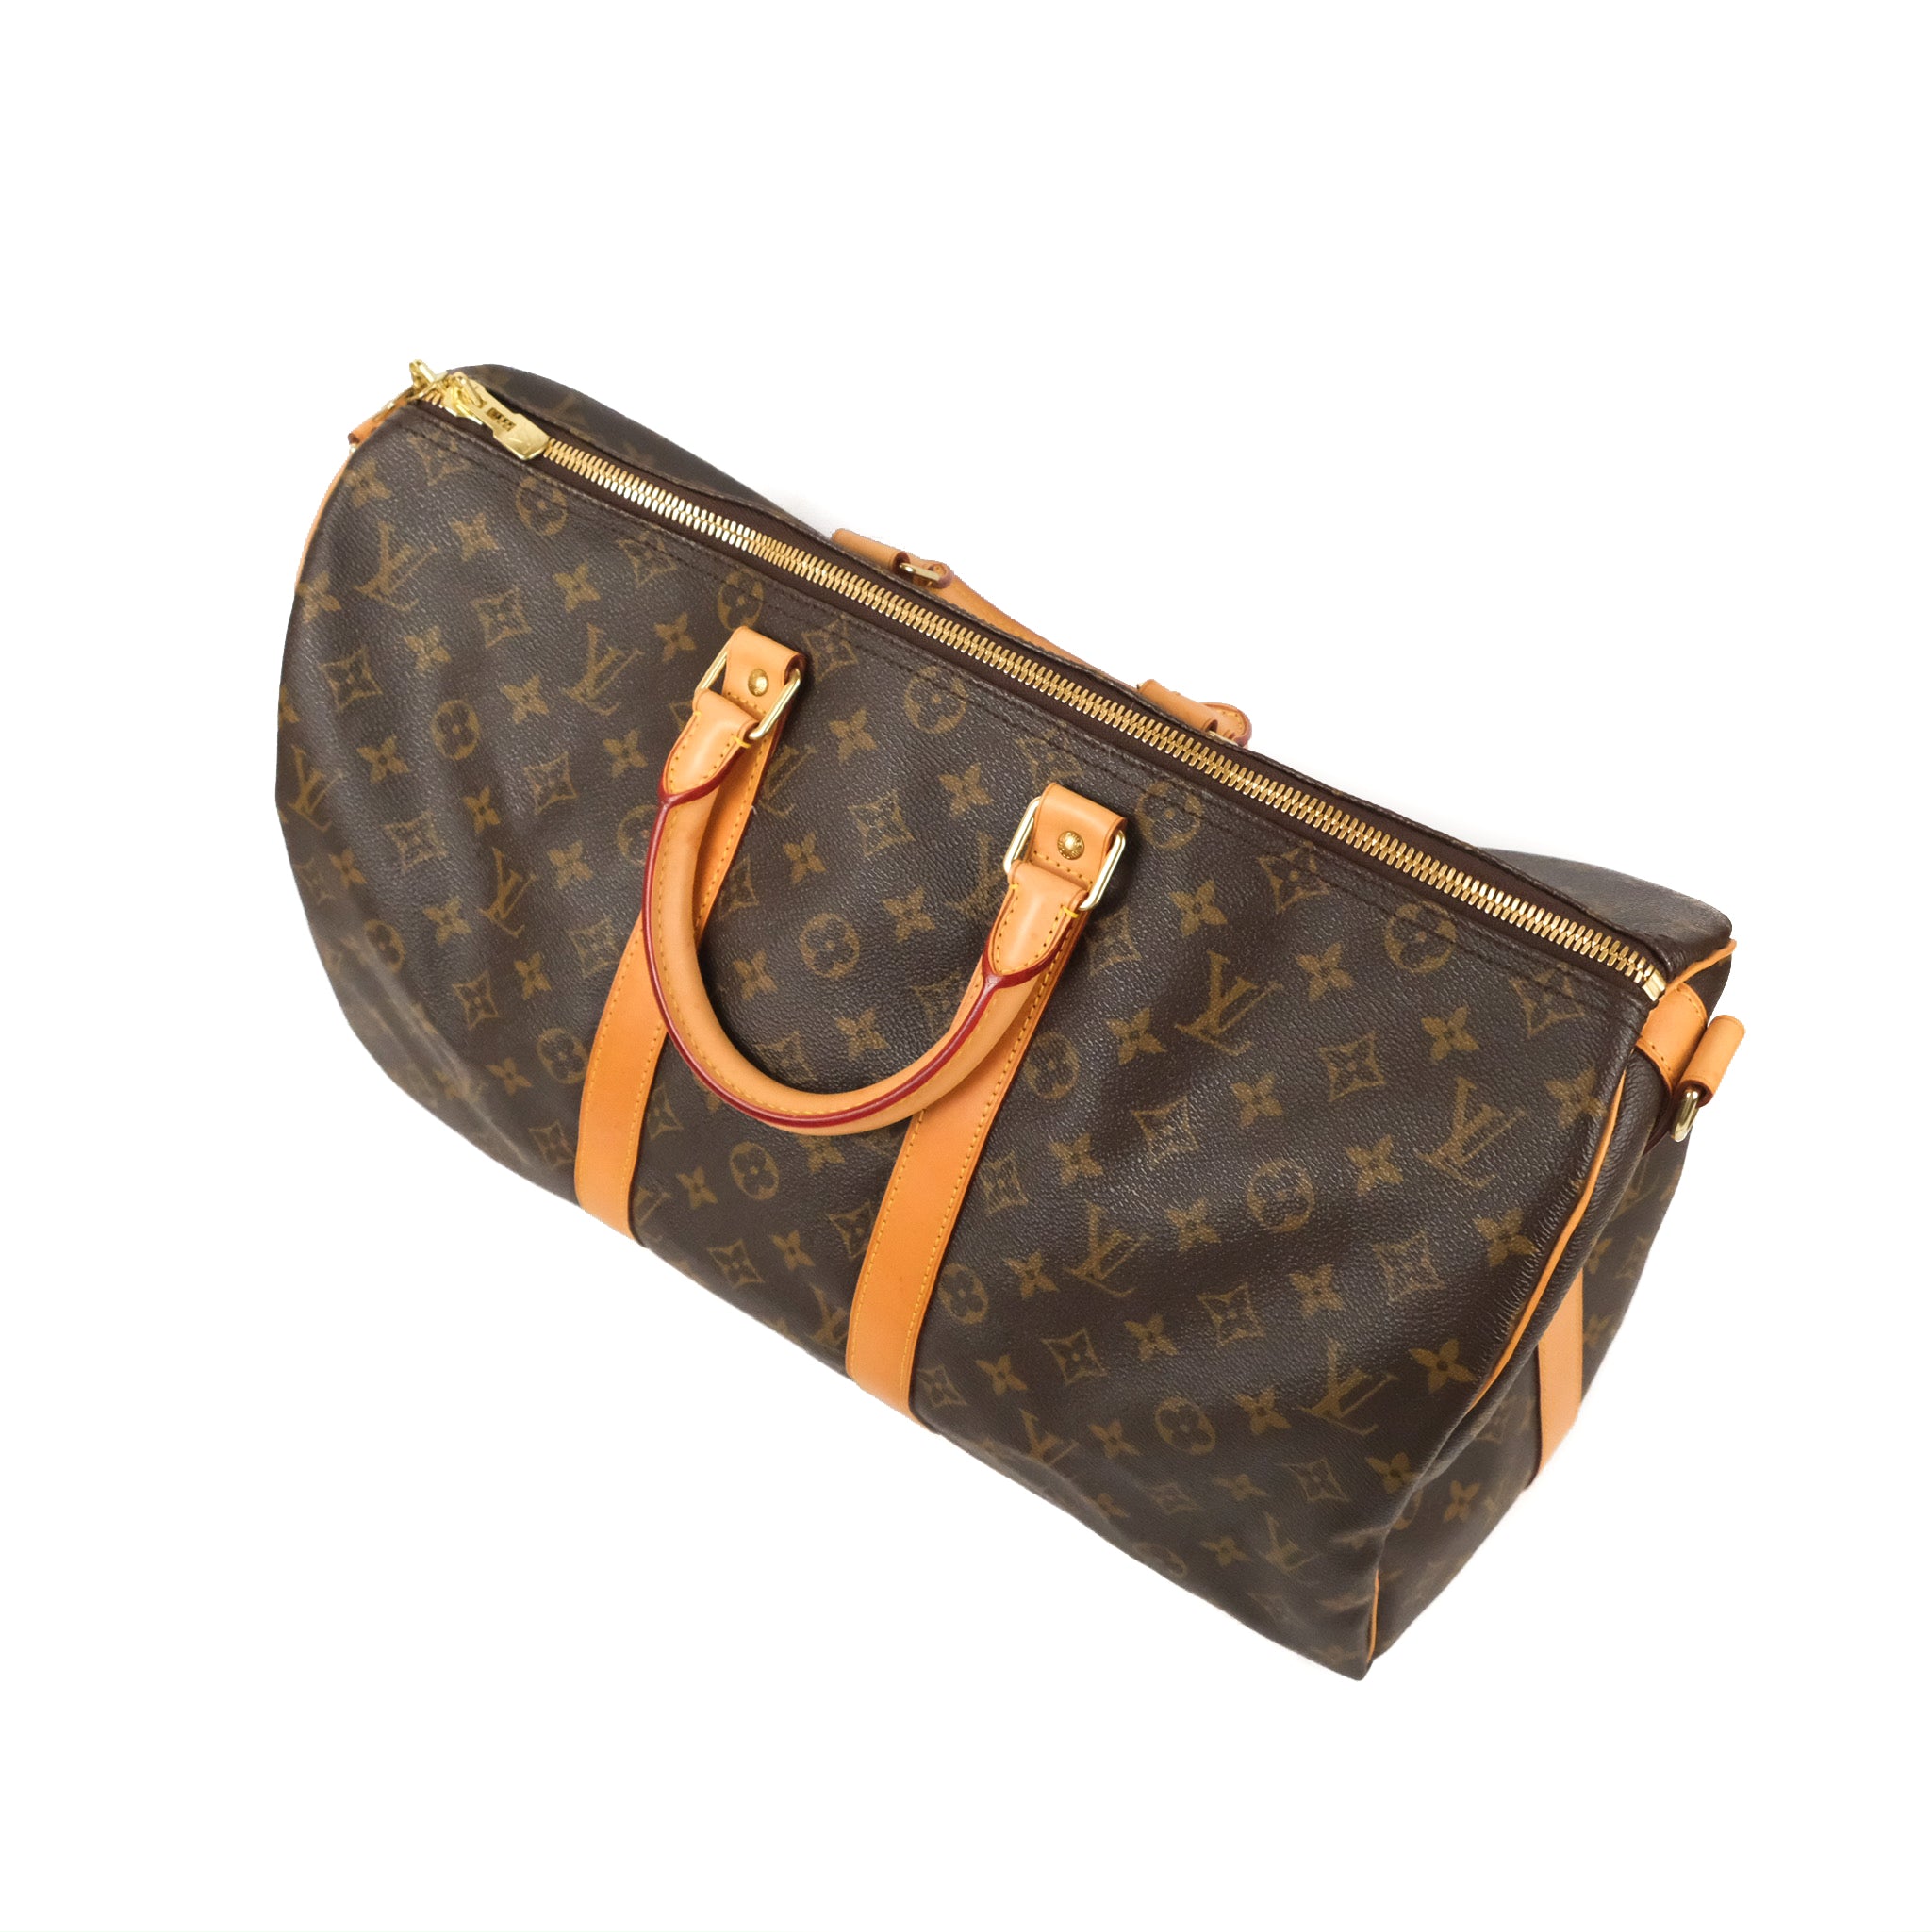 Shop Women's Louis Vuitton Duffle Bag